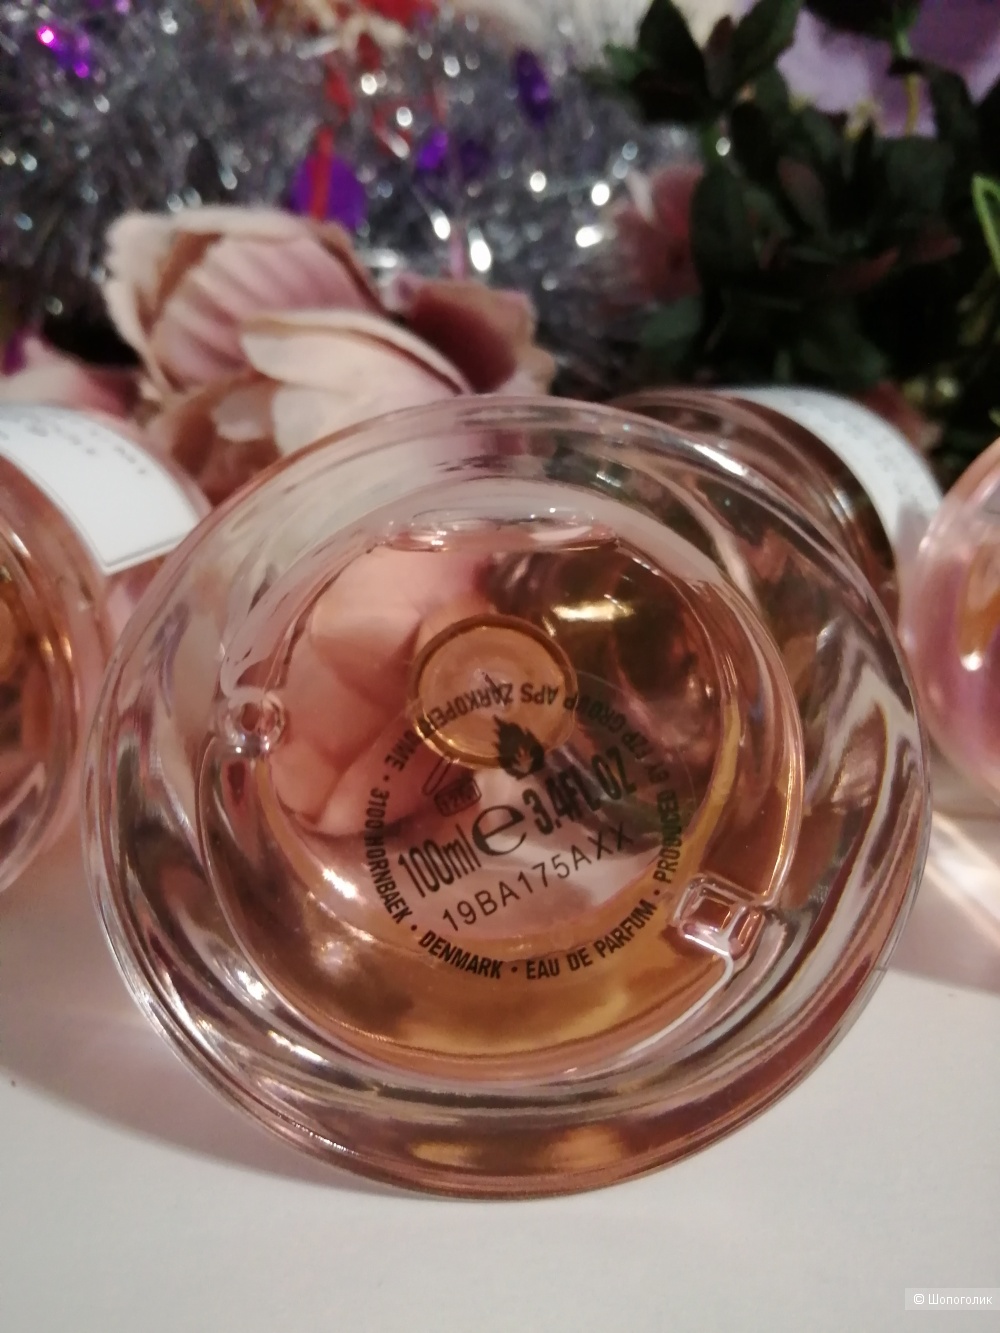 Zarkoperfume «PINK MOLéCULE 090.09» (Розовая молекула 090.09), 100 мл